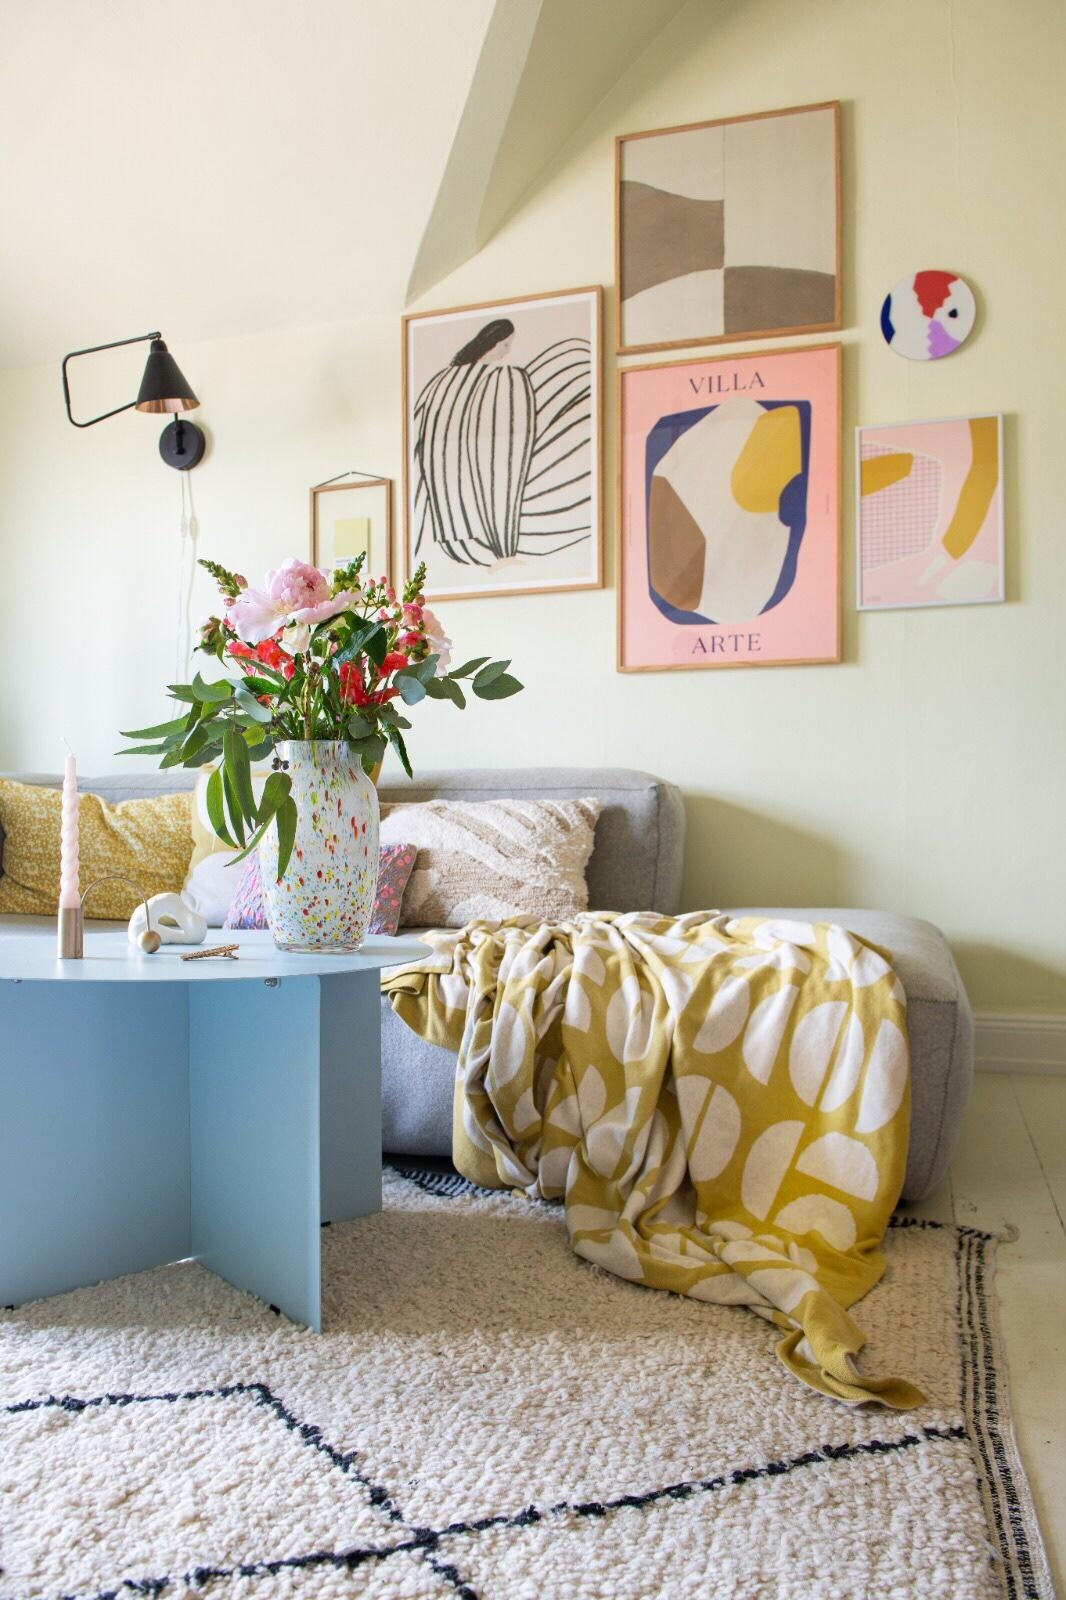 Limettengelb im Wohnzimmer 💛💚
#color #colorfulinterior #pastell